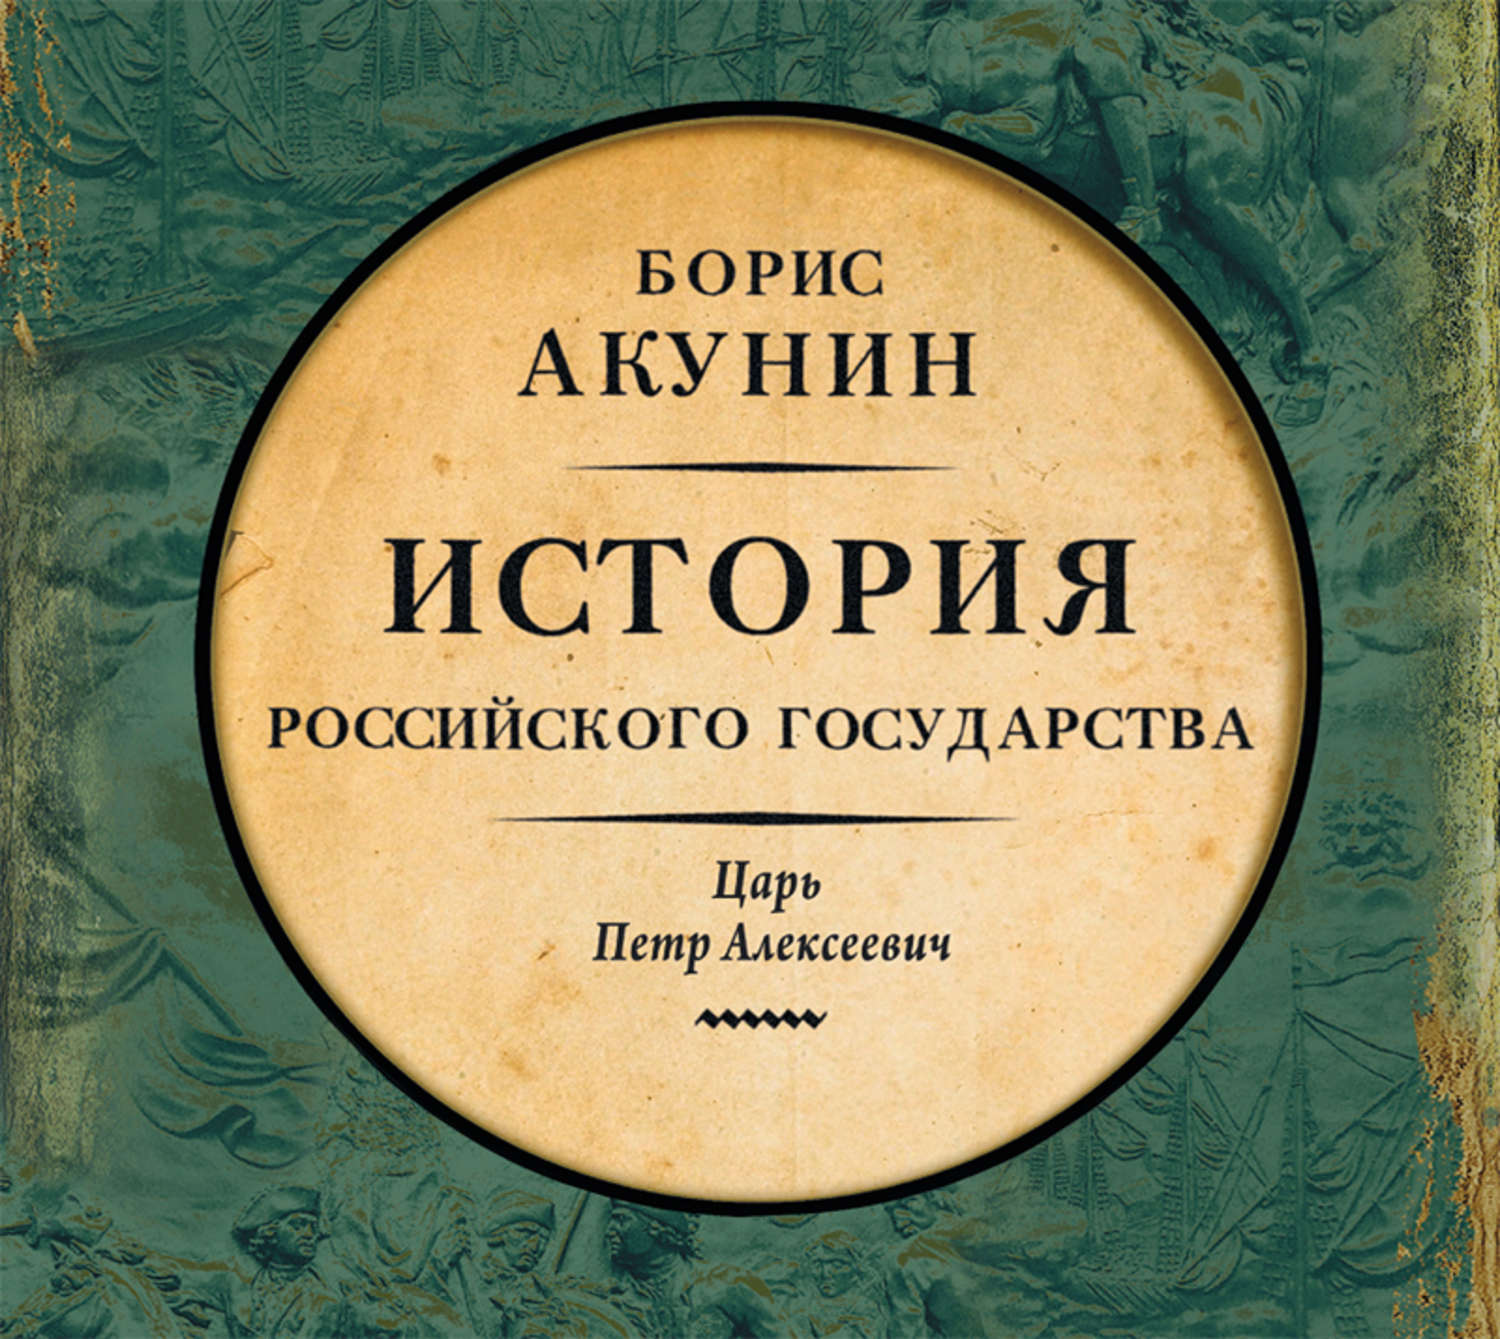 Скачать бесплатно книги акунин история российского государства